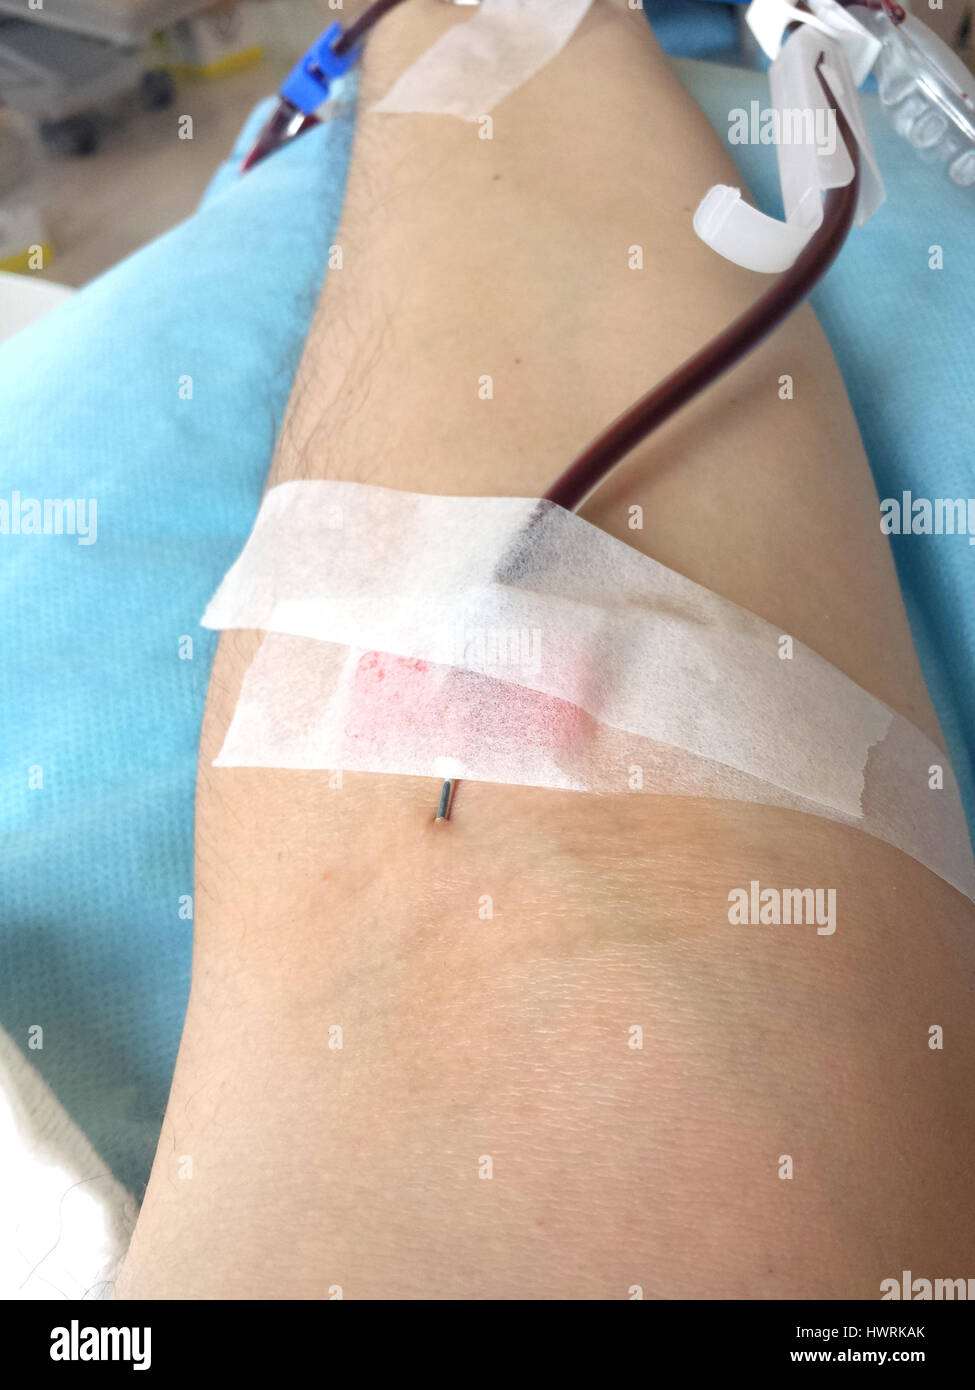 Braccio del paziente in un ospedale durante la trasfusione di sangue con l'ago all'interno del braccio Foto Stock